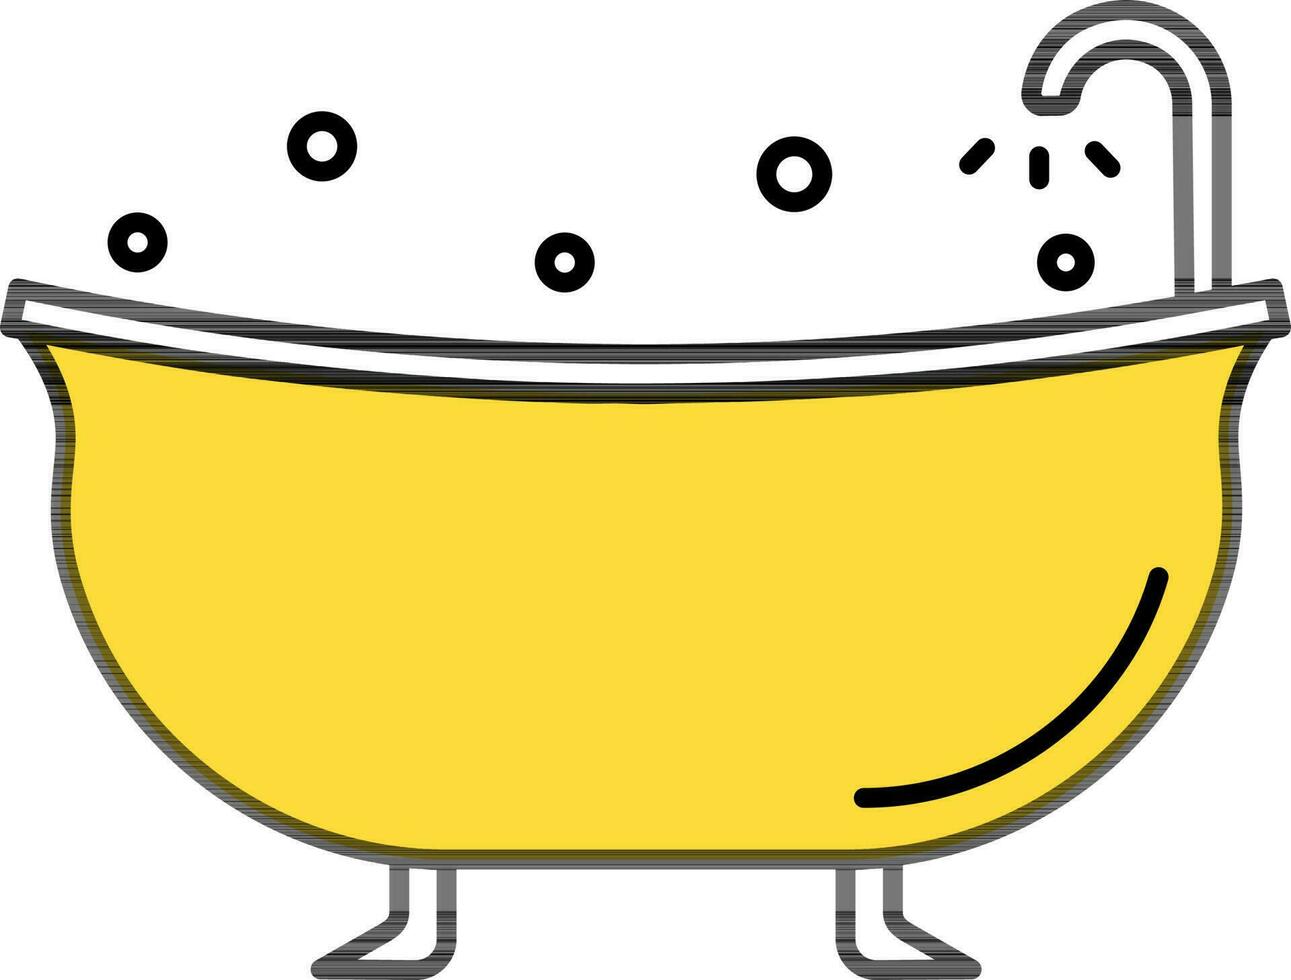 Bathtub Icon Or Symbol In Yellow Color. vector